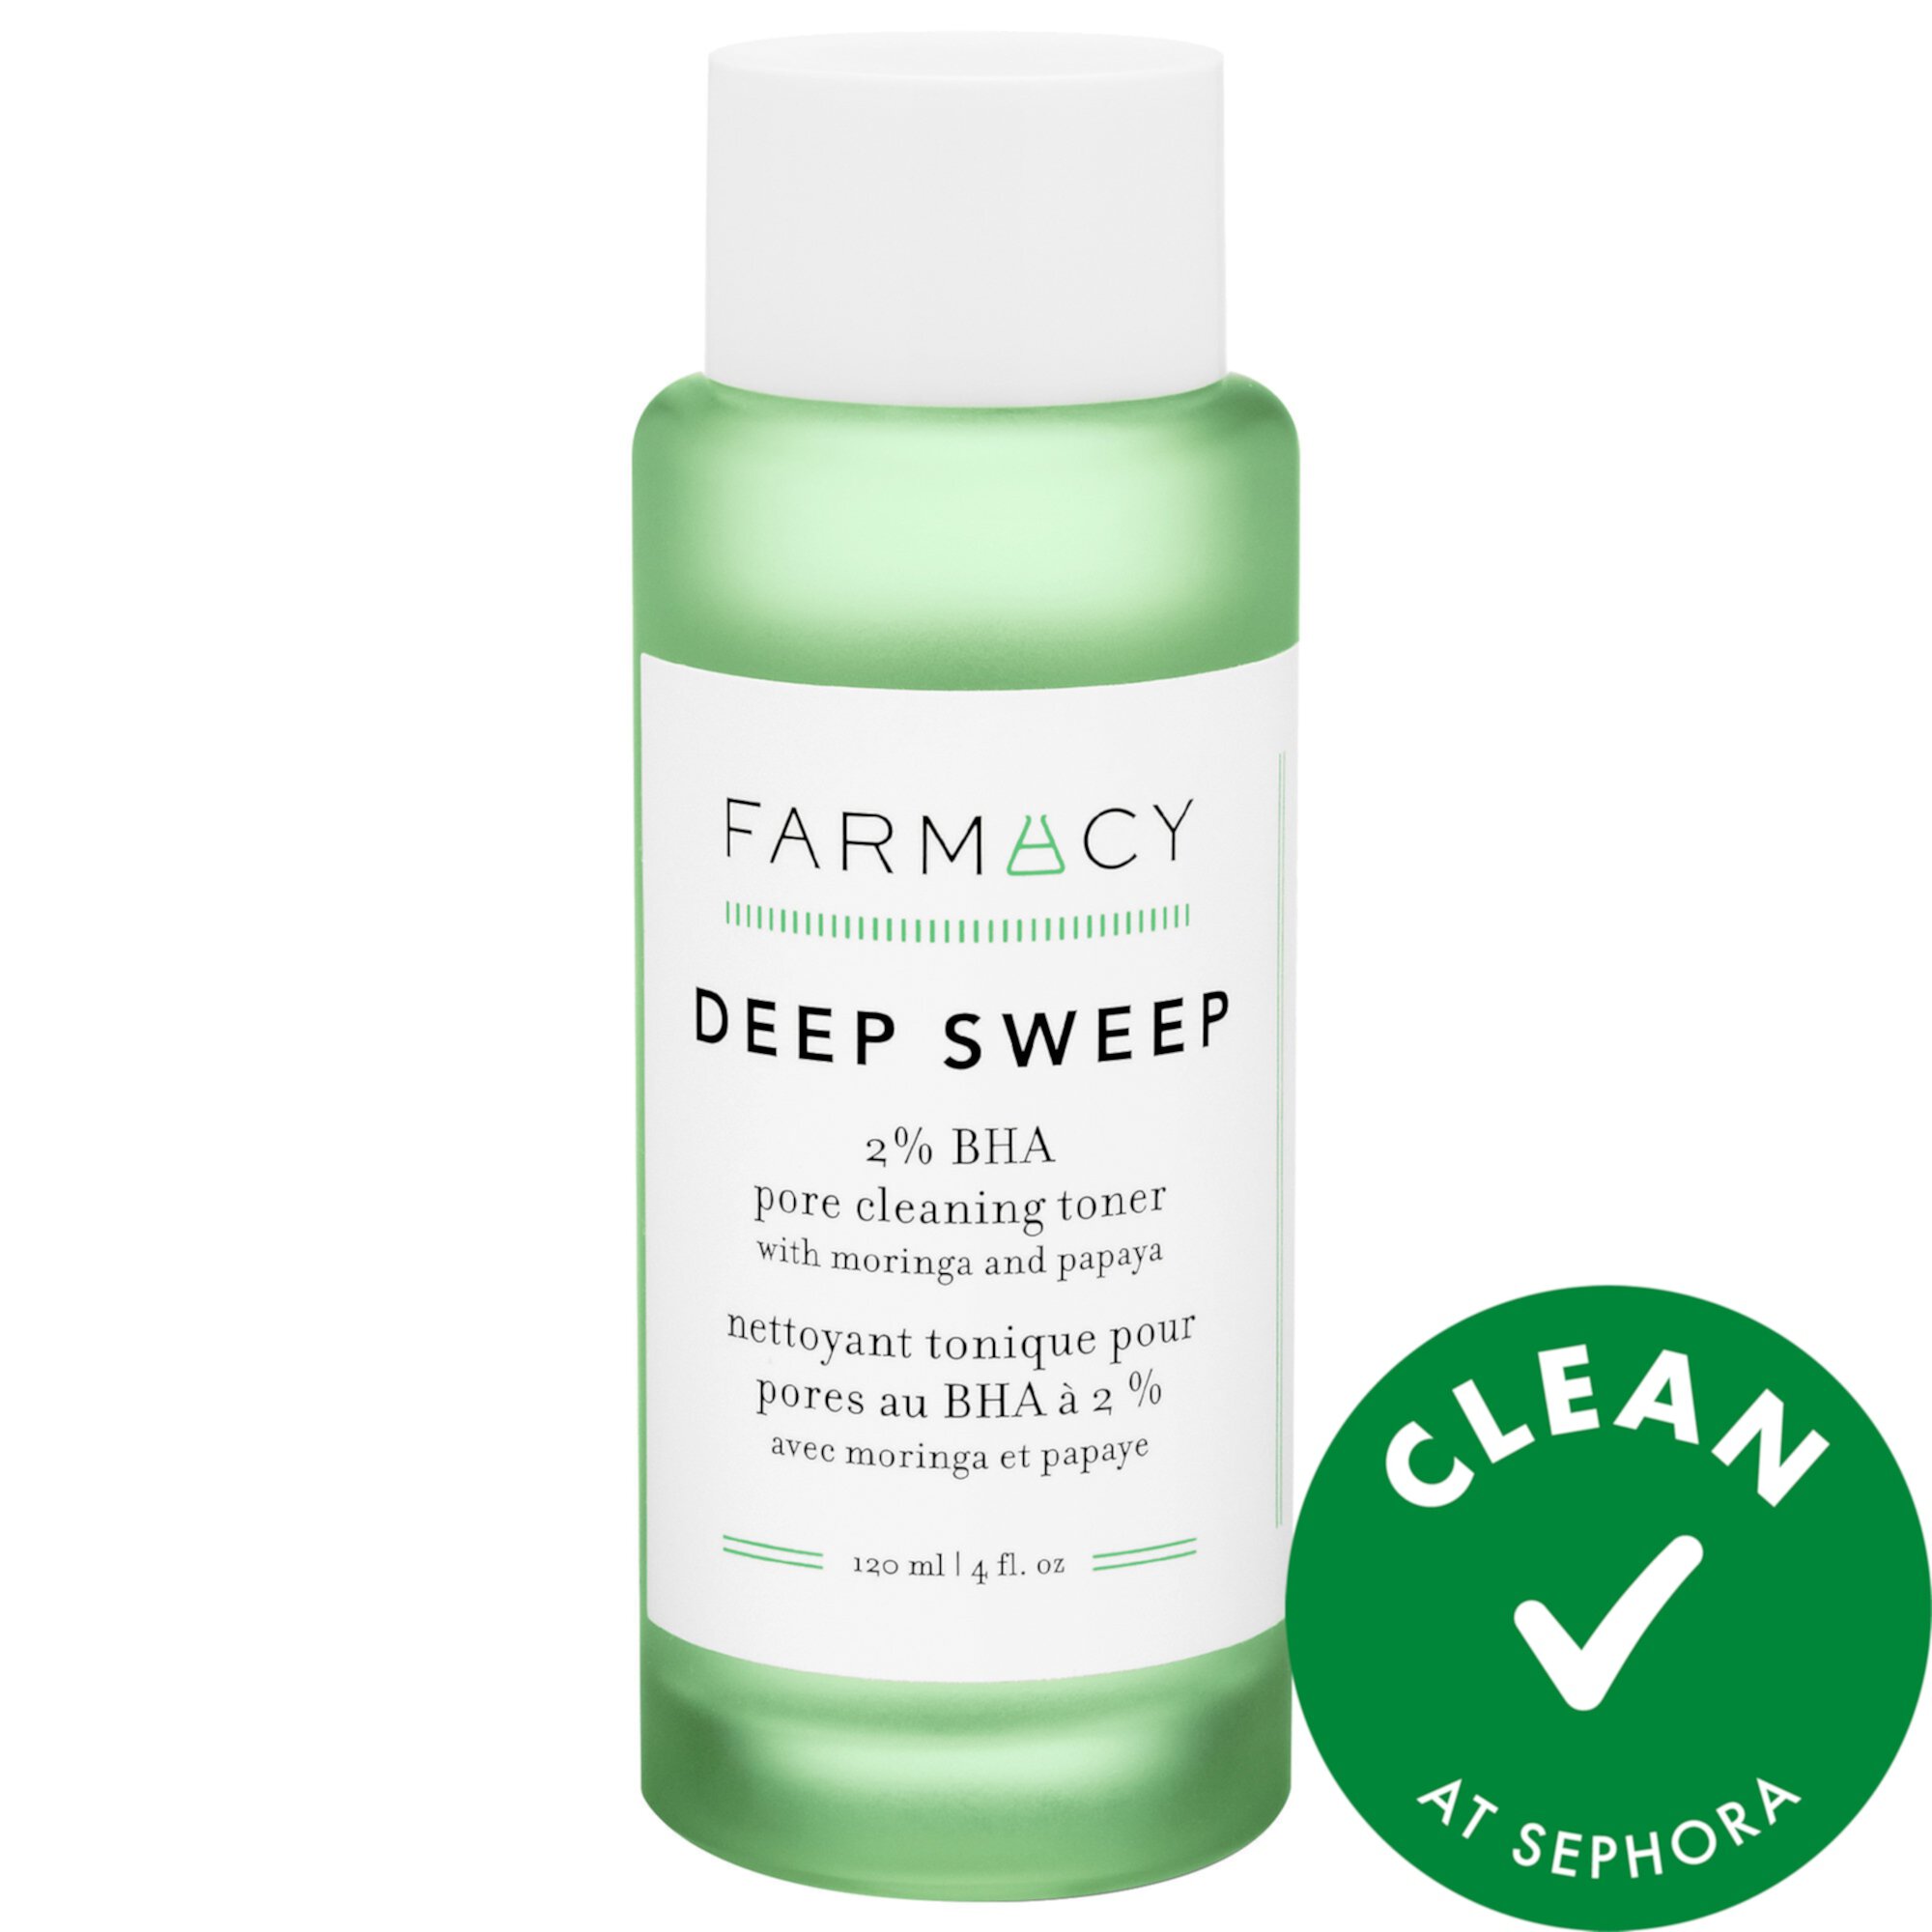 Тоник для очистки пор Deep Sweep 2% BHA с морингой и папайей Farmacy